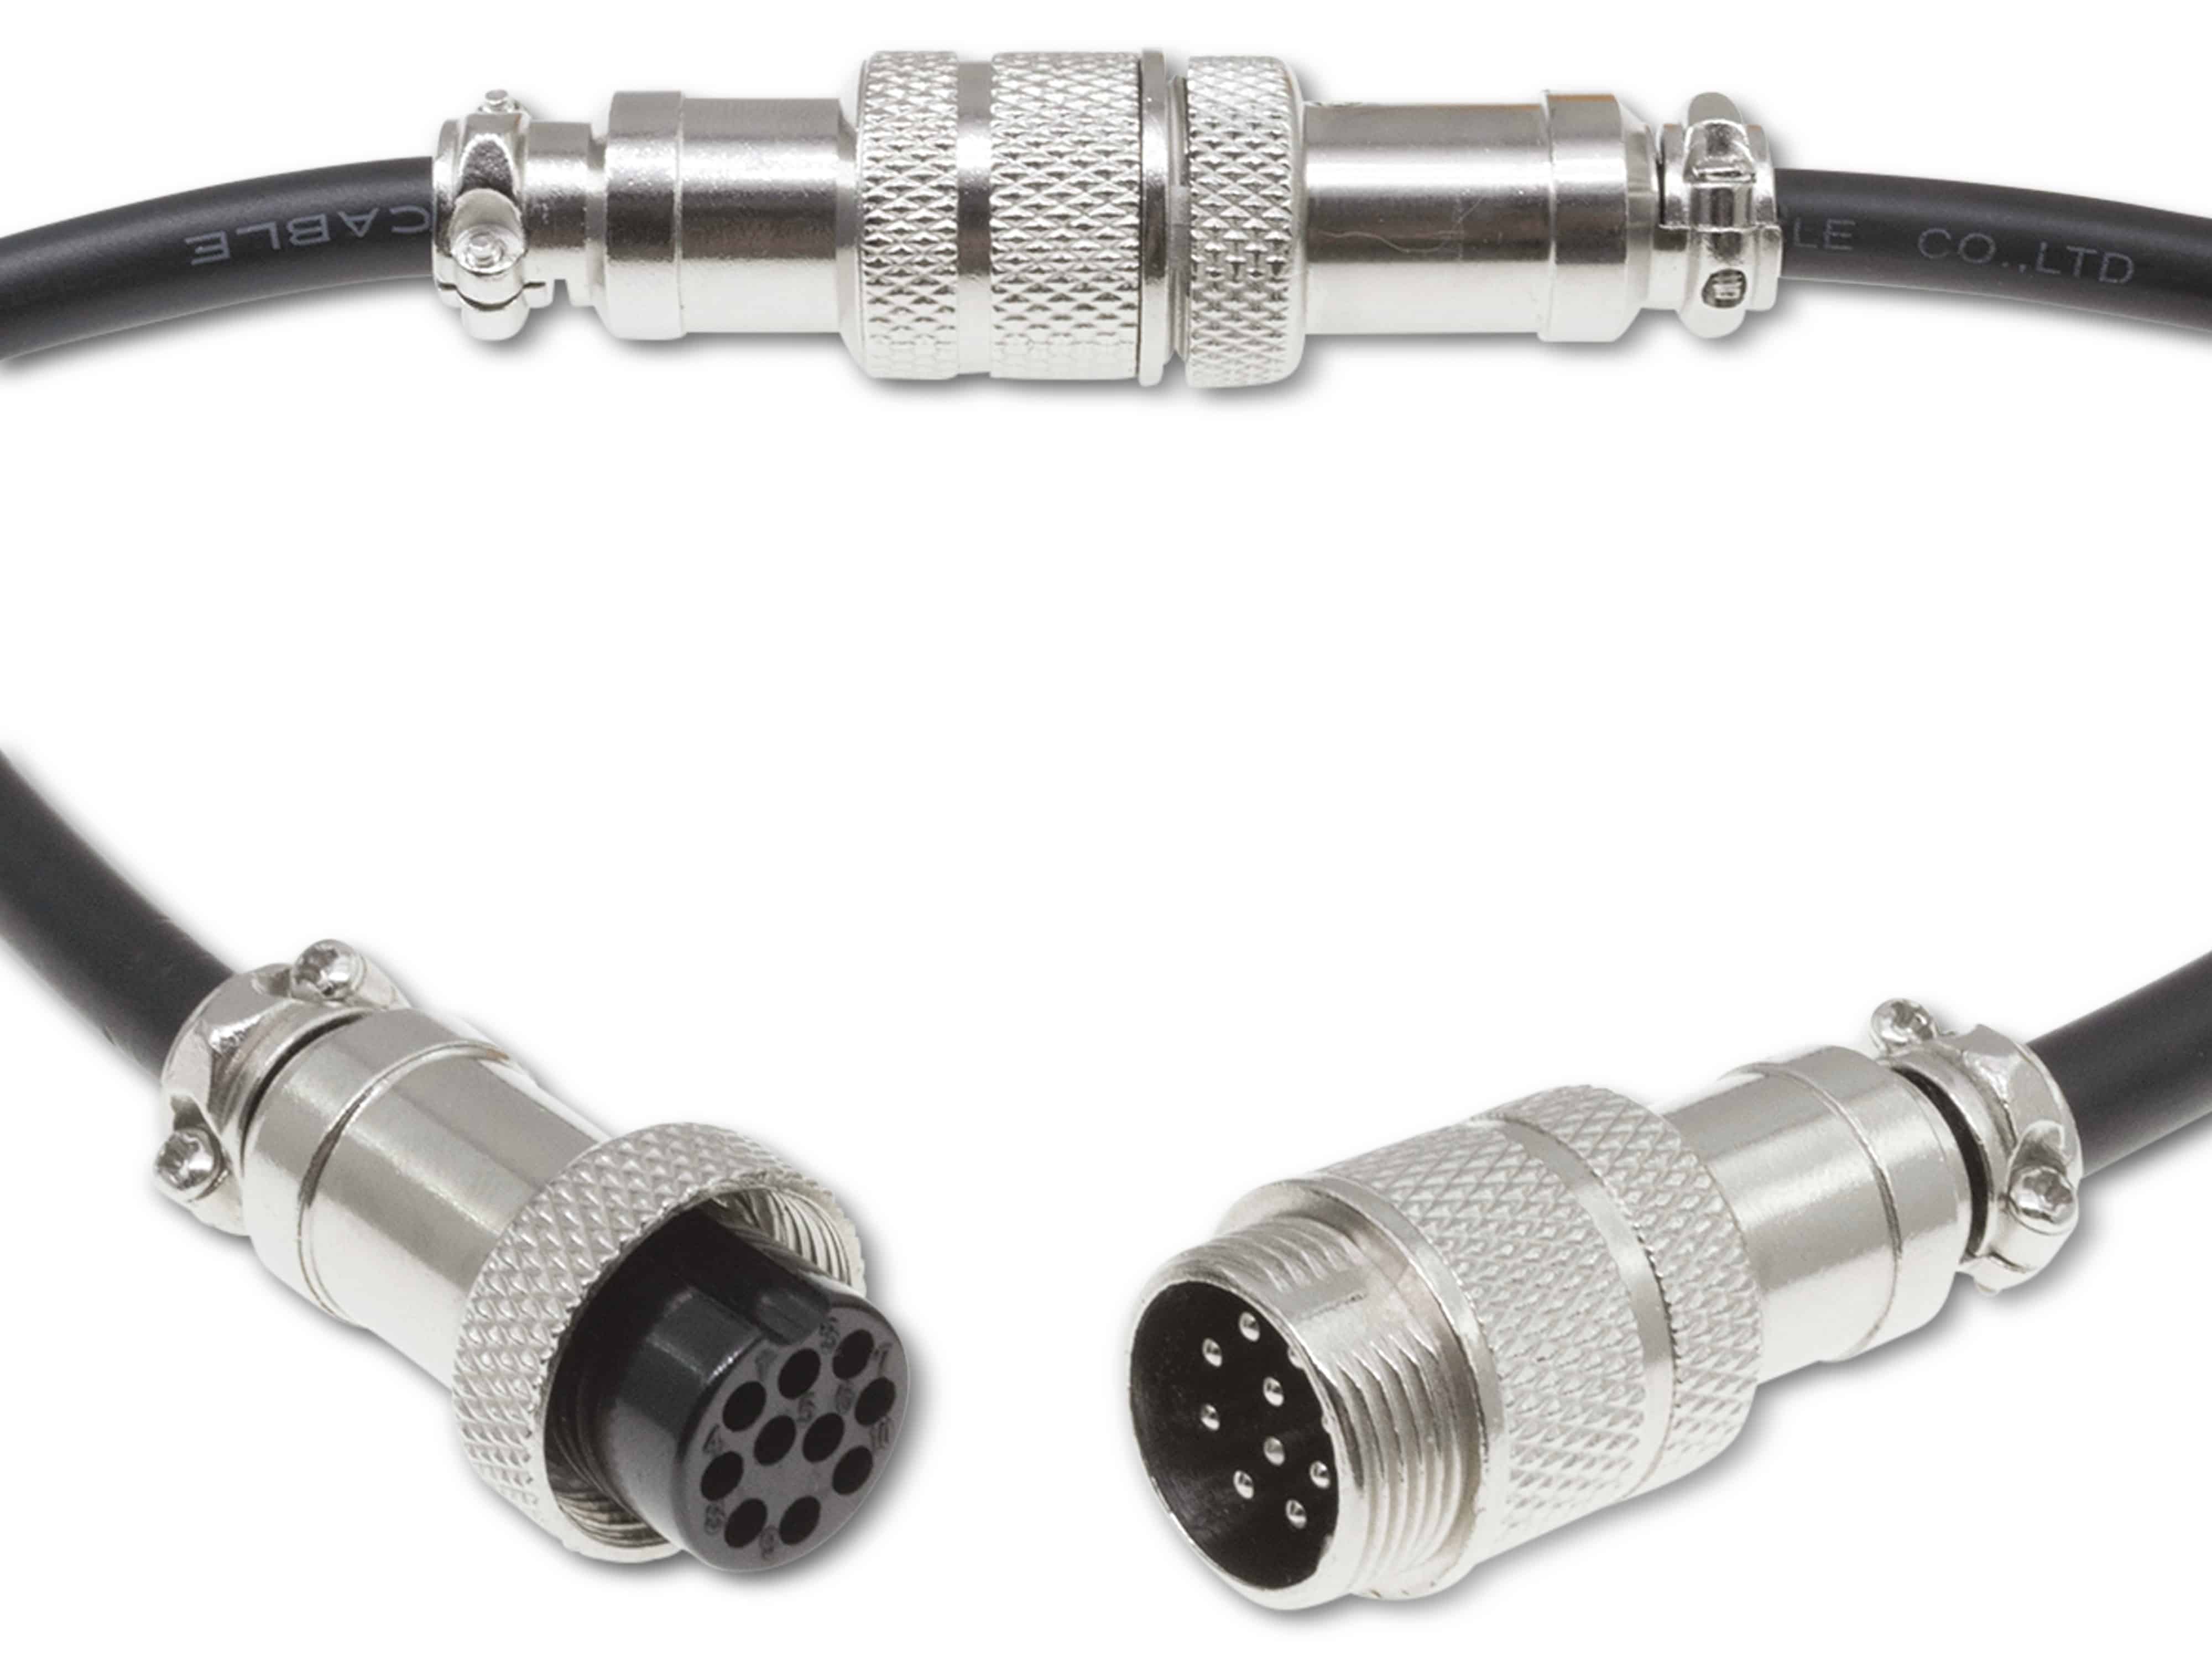 Rundsteckverbinder, 10-polig, 30V, 1A, Lötanschluss, IP55, wire to wire, 1 Stecker + 1 Buchse